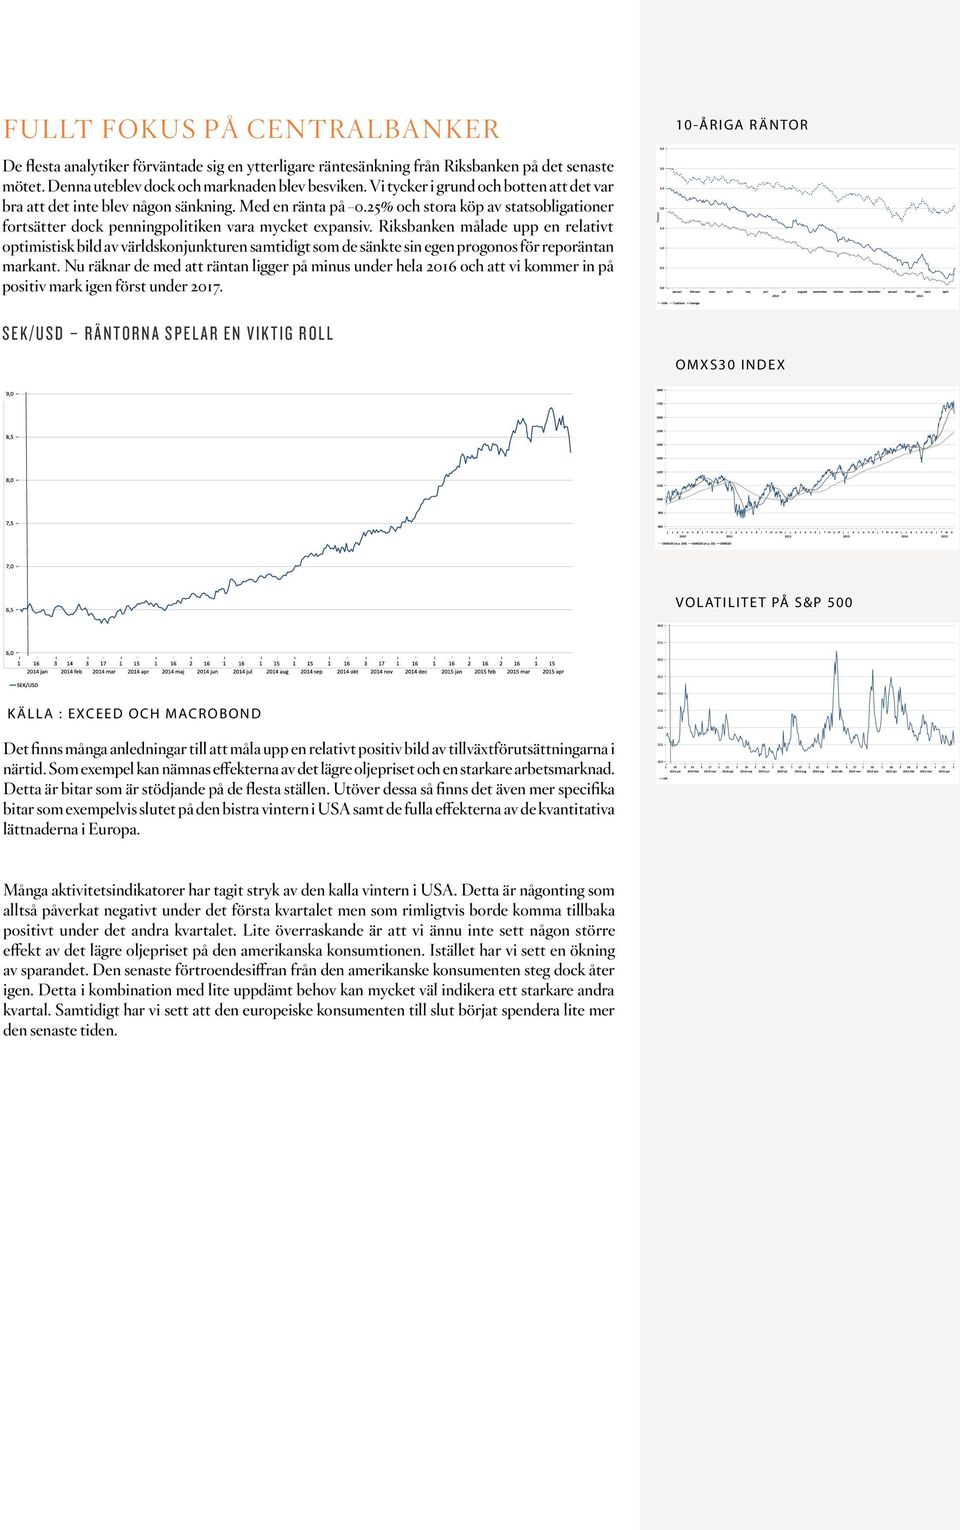 Riksbanken målade upp en relativt optimistisk bild av världskonjunkturen samtidigt som de sänkte sin egen progonos för reporäntan markant.